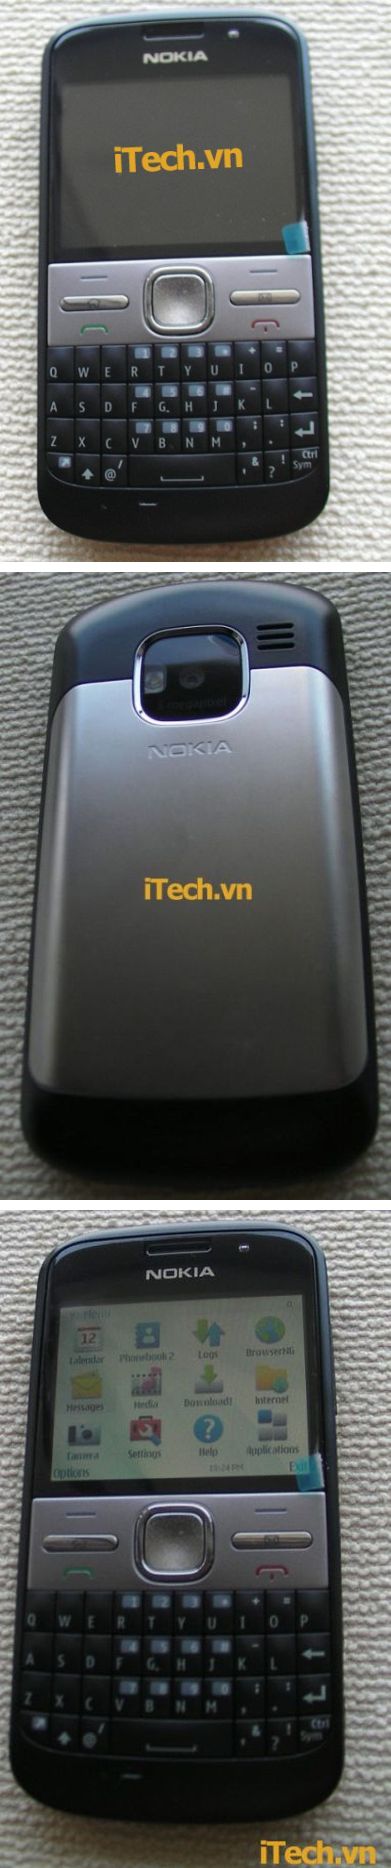 Nokia E72 + Palm Cento = Nokia Mystic